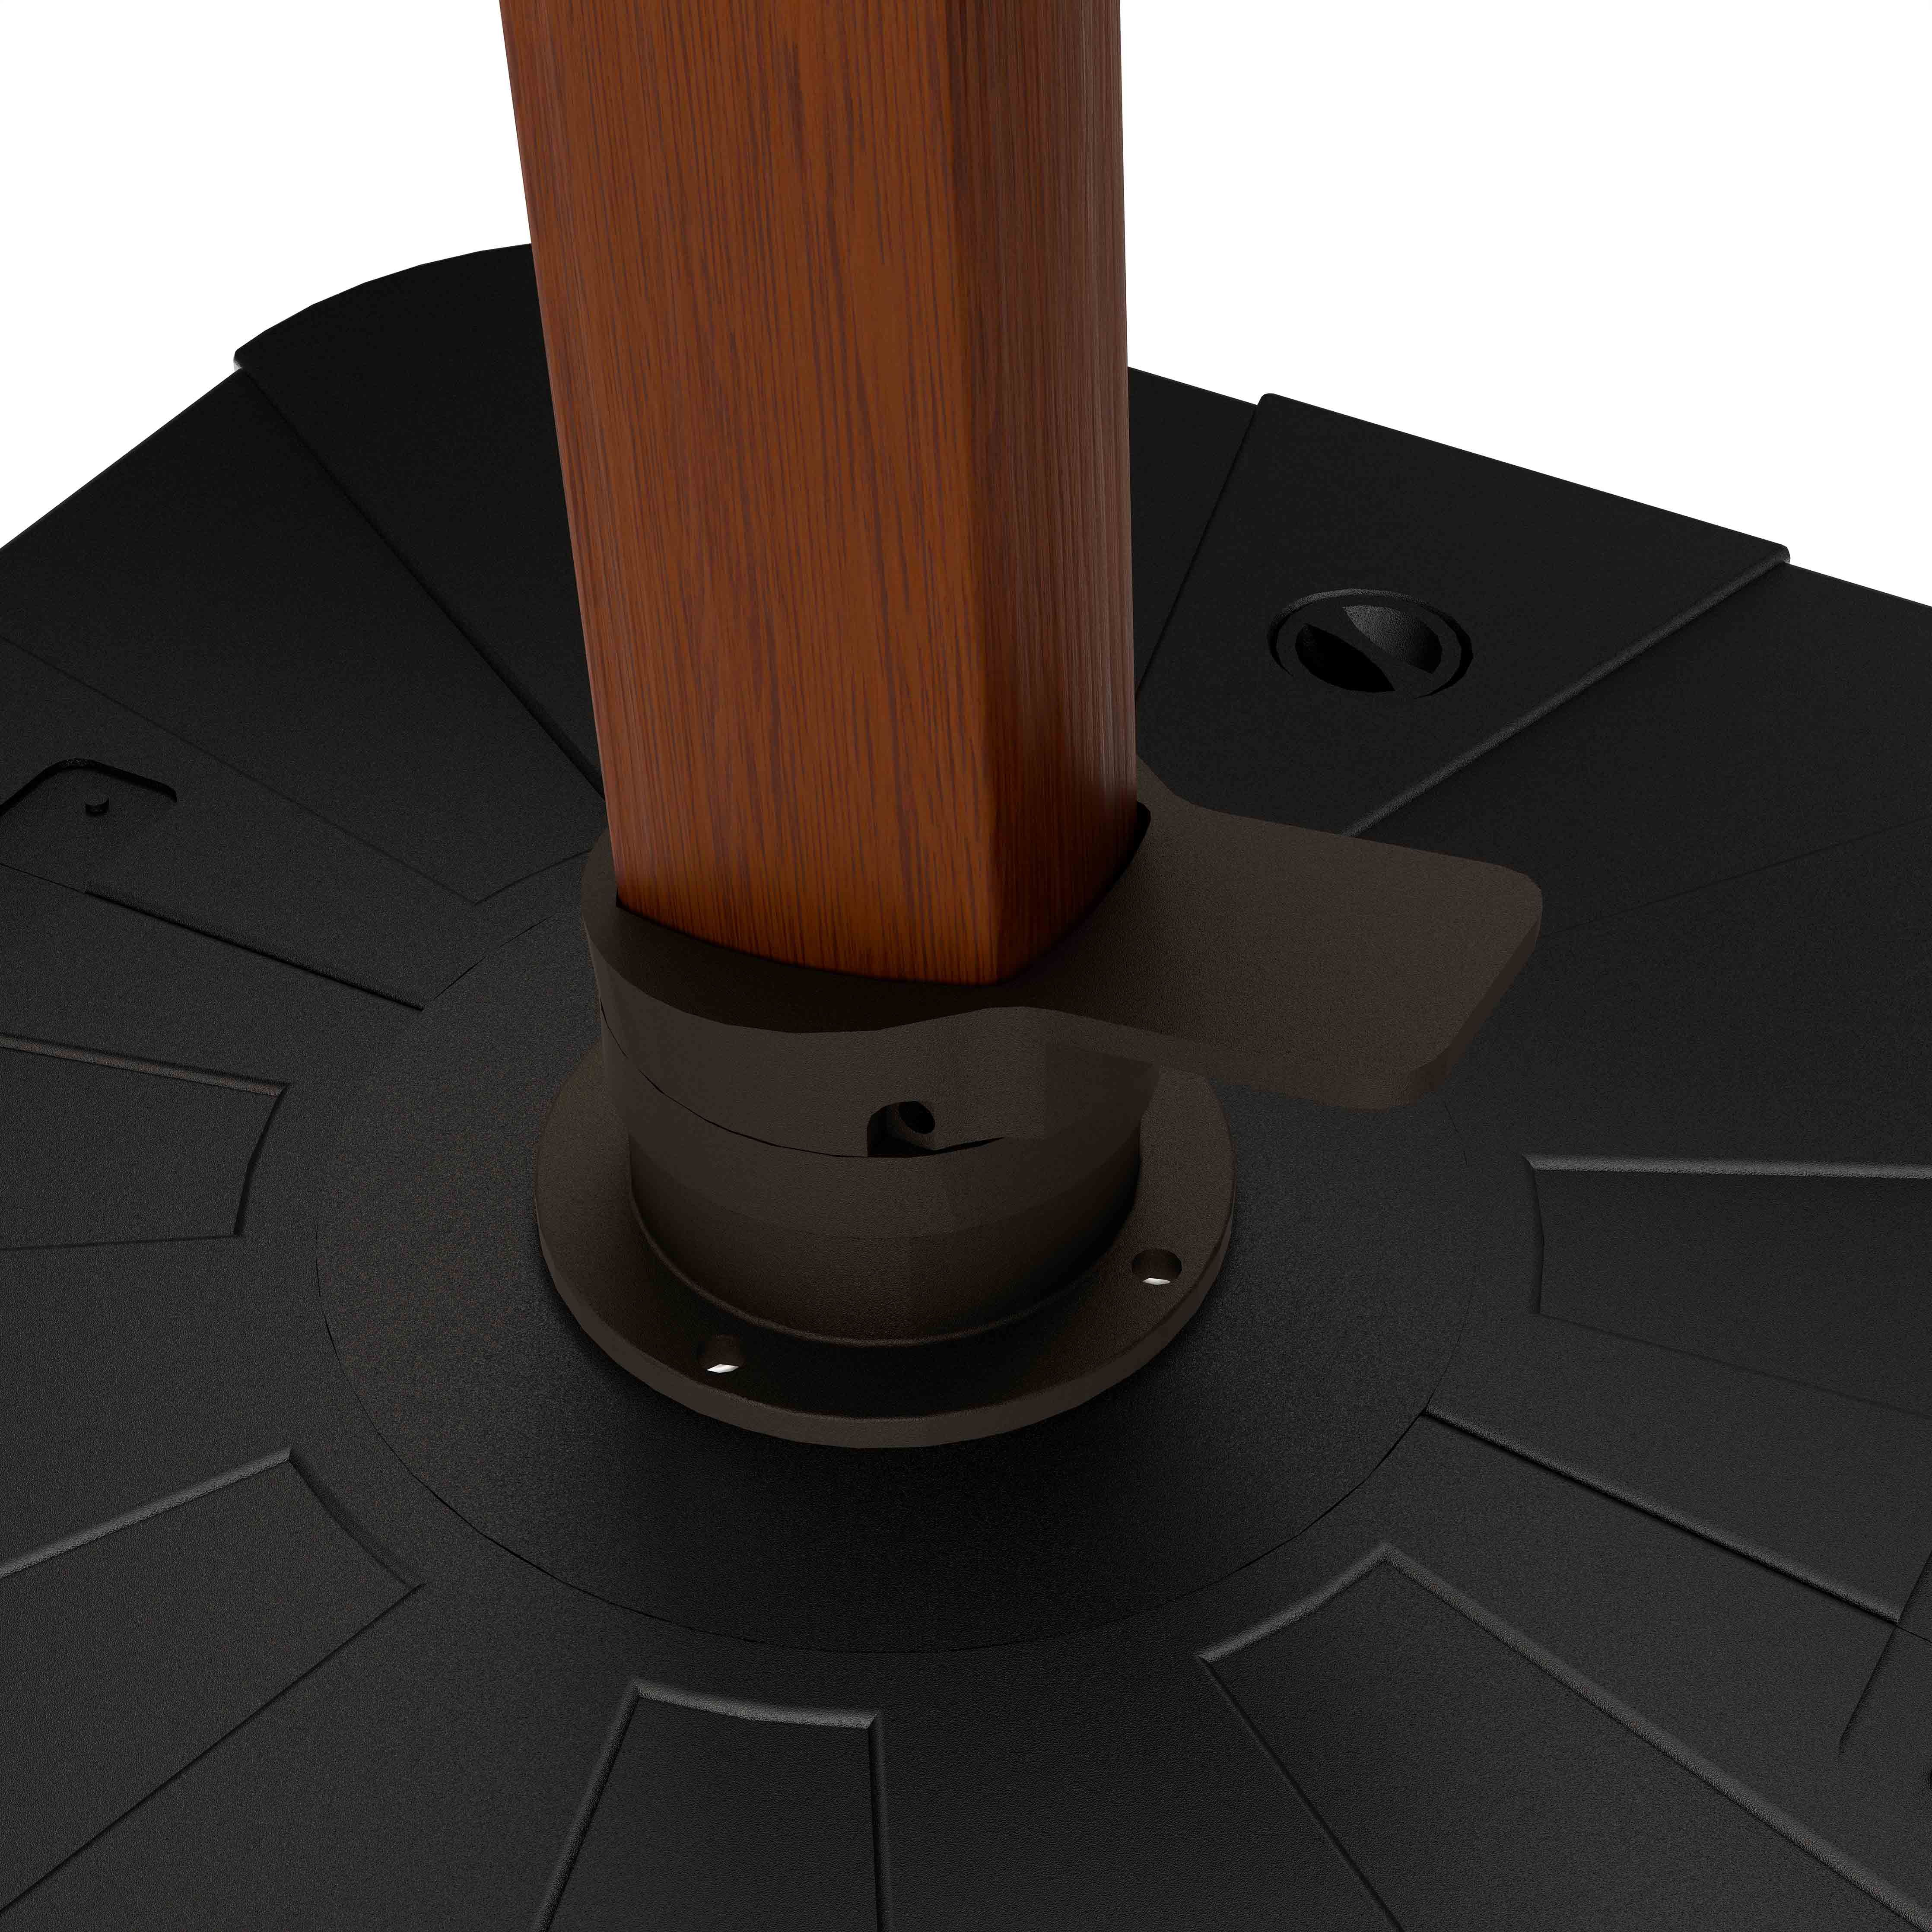 The Supreme Wooden™ - Sunbrella Terracota